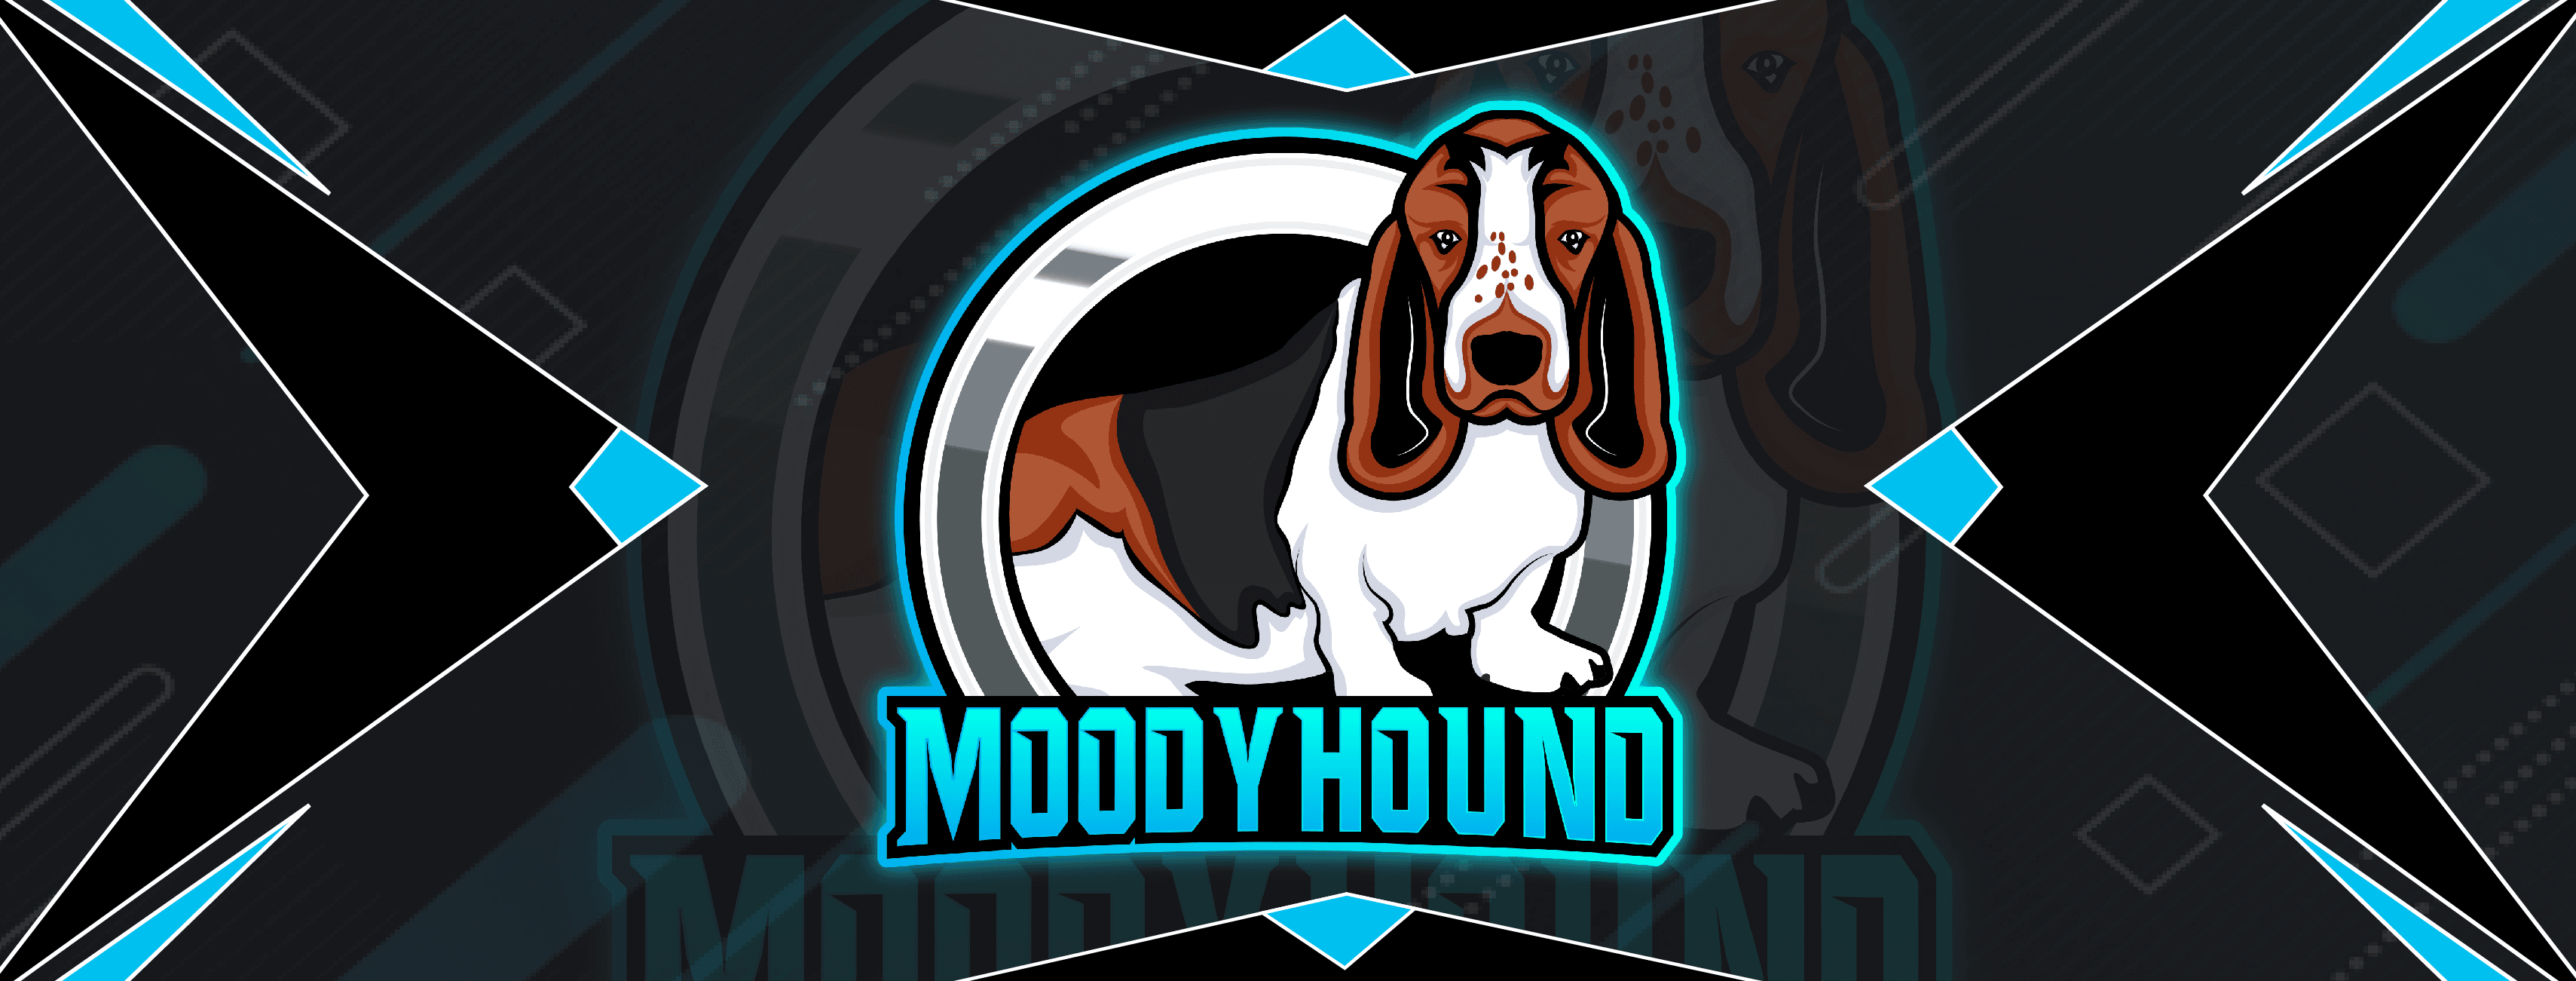 Moodyhound banner